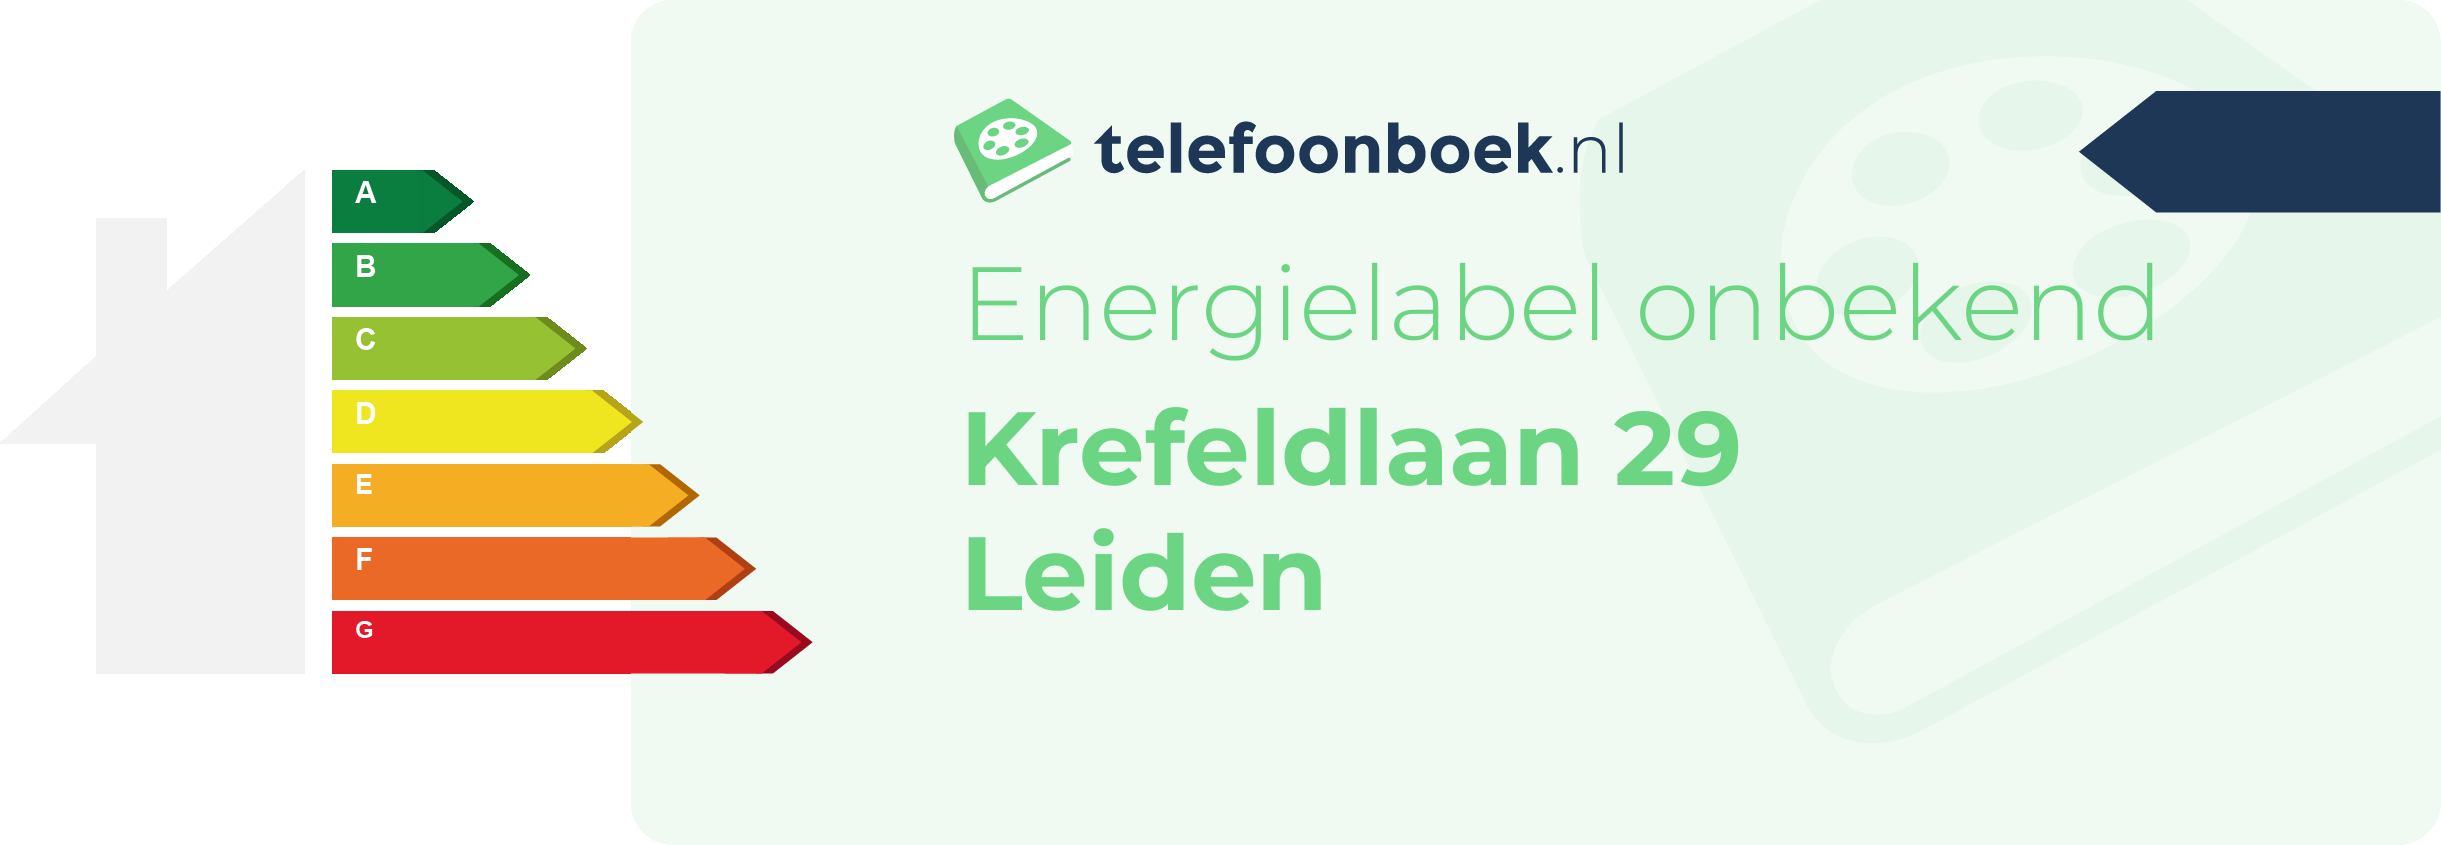 Energielabel Krefeldlaan 29 Leiden